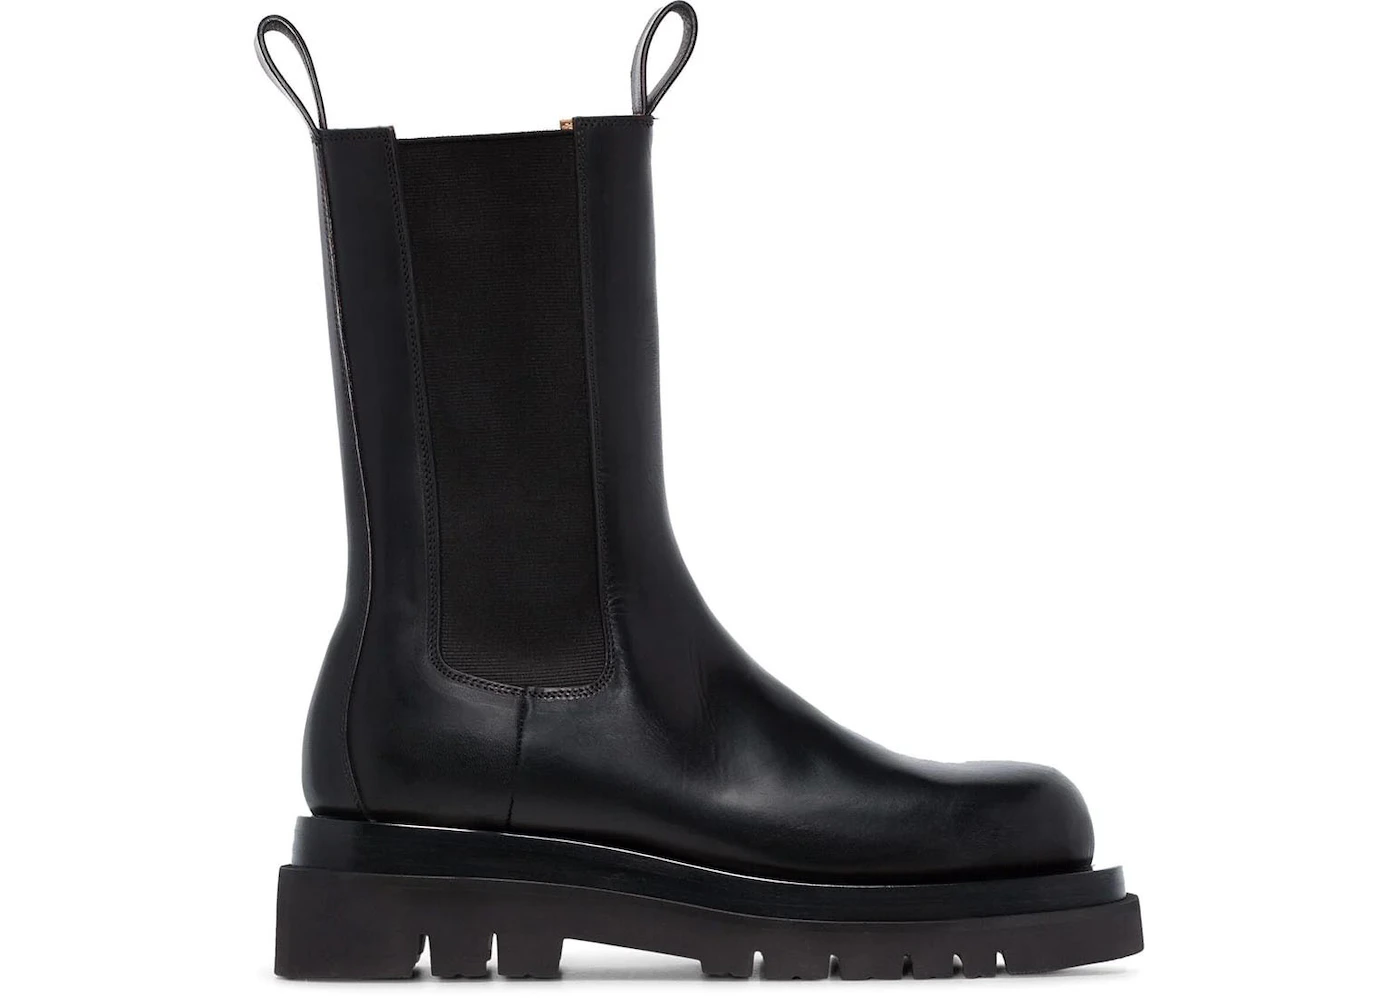 Bottega Venetta Lug Boots Black Leather - 592045 VIFH0 1000 - US